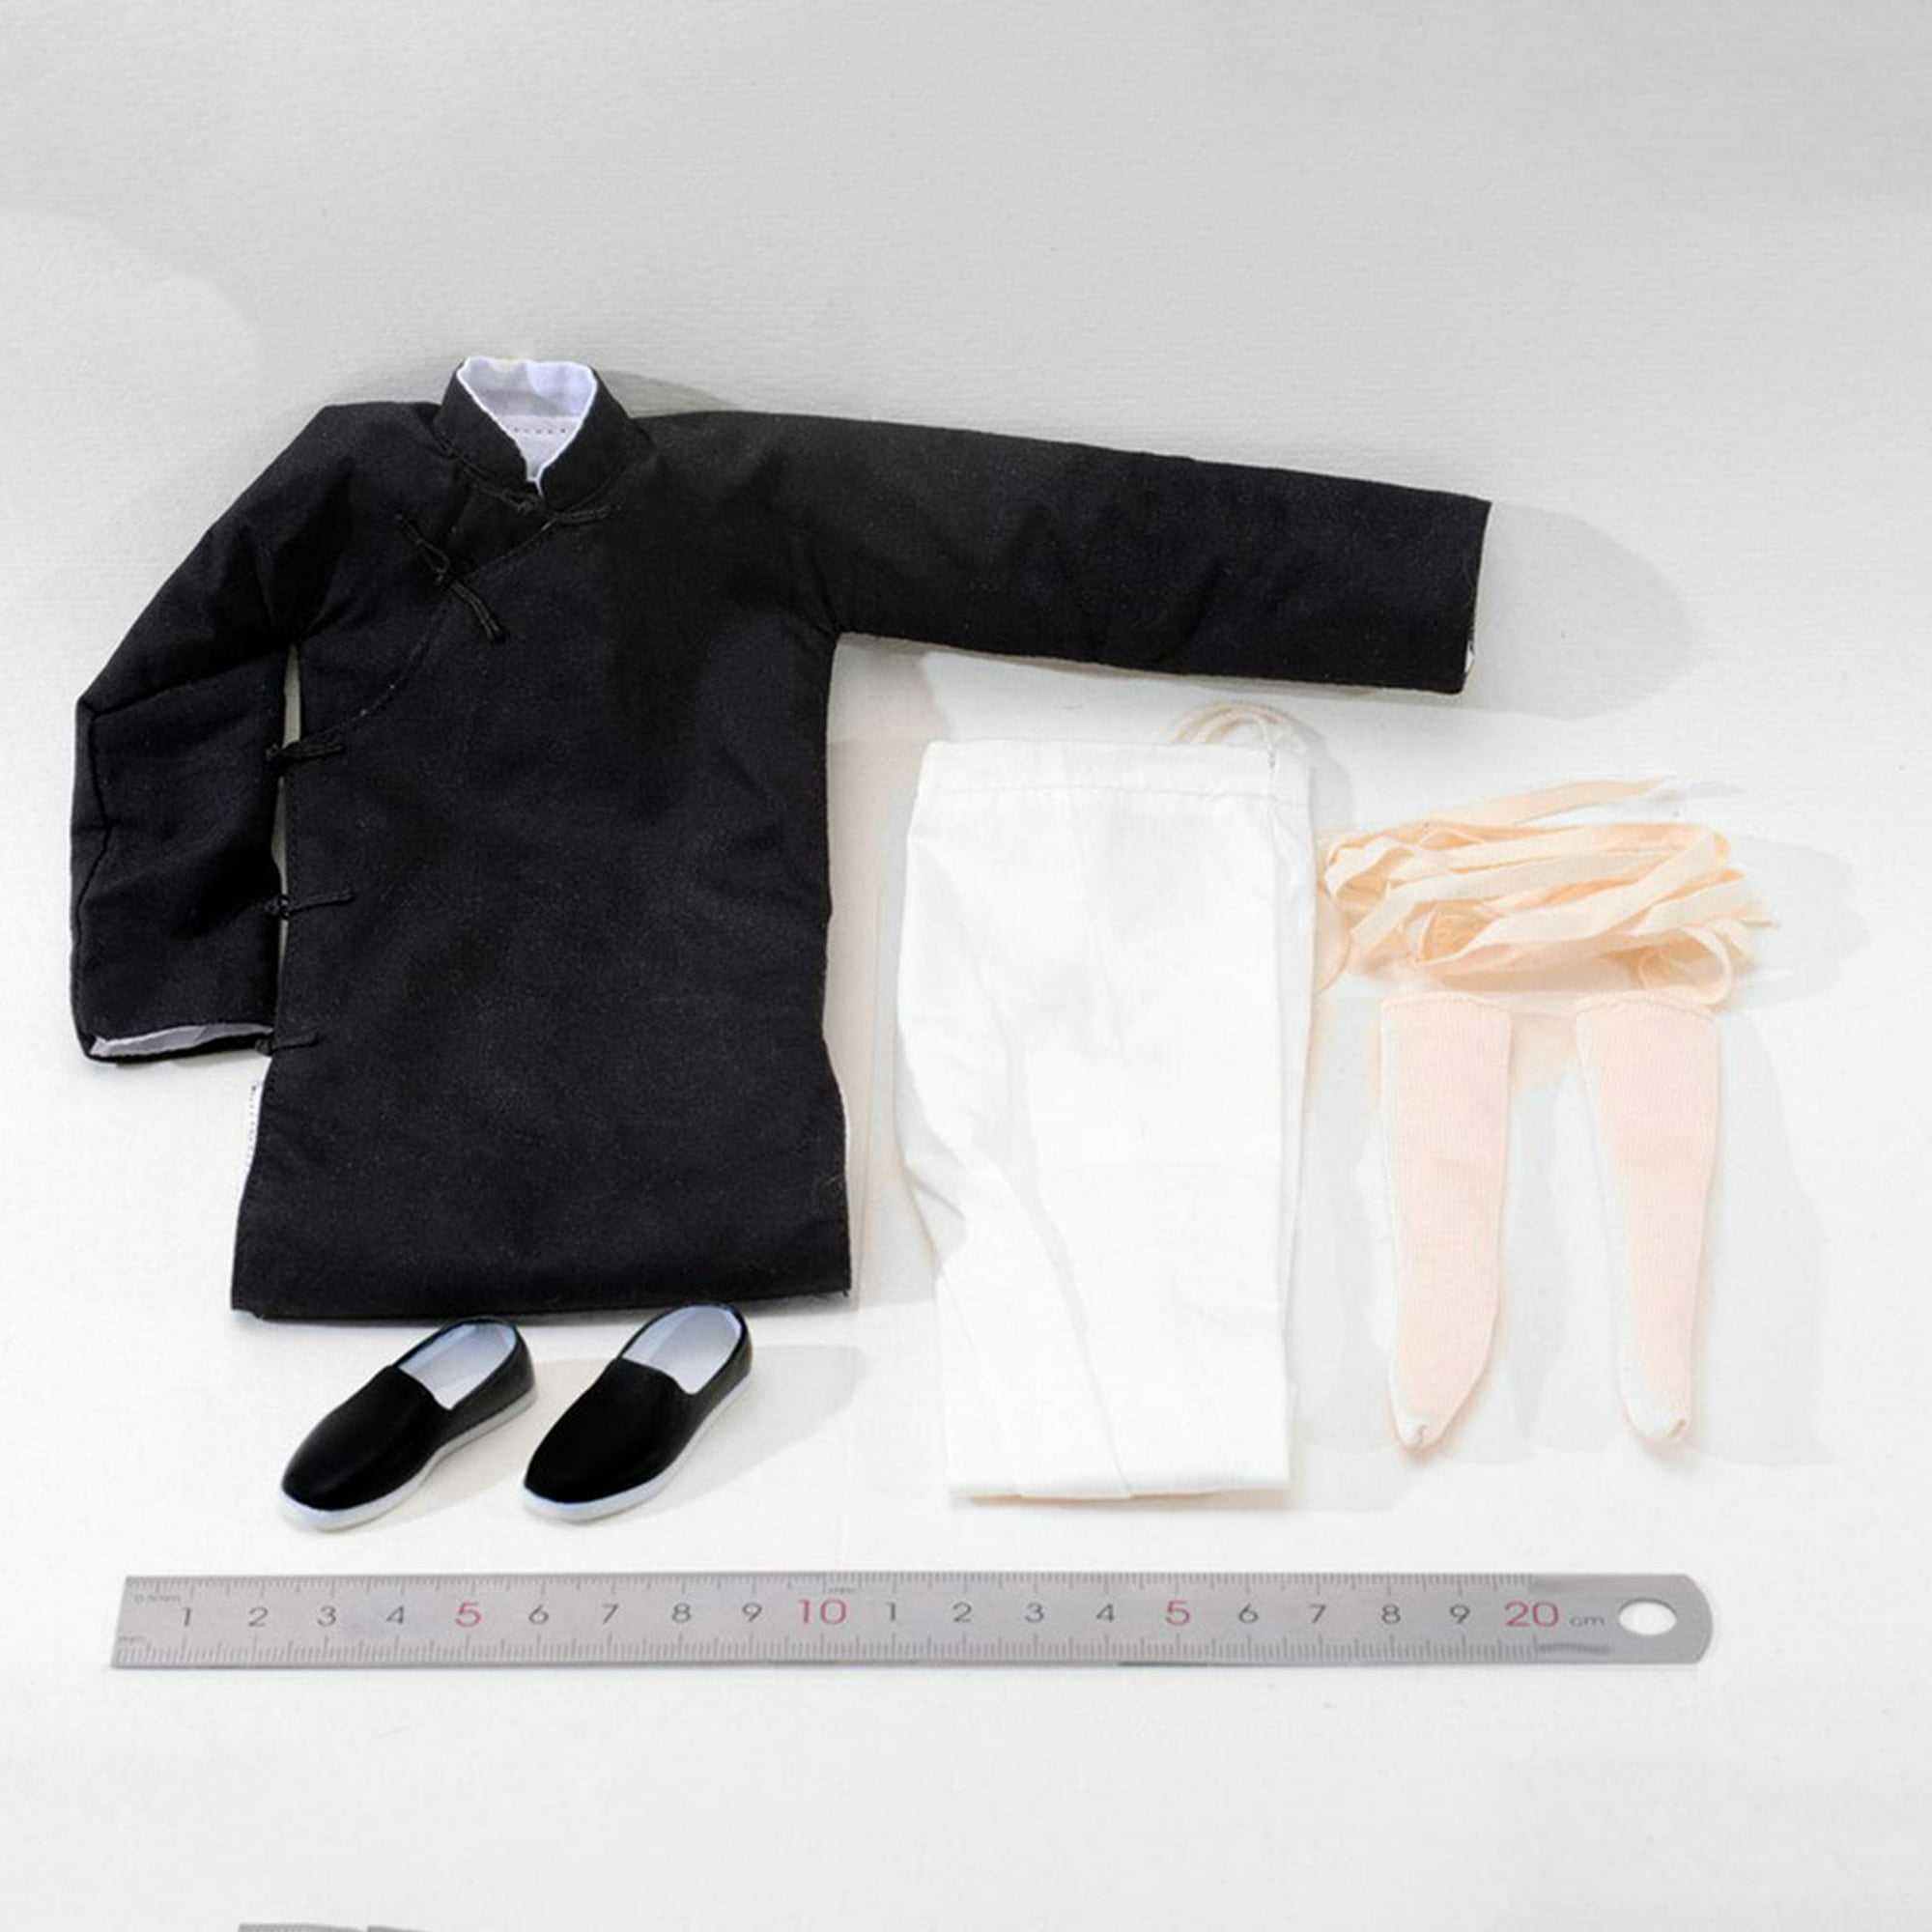 Ropa de figura masculina,Figura de muñeca  1/6,ropa,pantalones,uniforme,Figuras de acción de ropa de masculinos  disfraz de juguete,1:6 hombre hombre